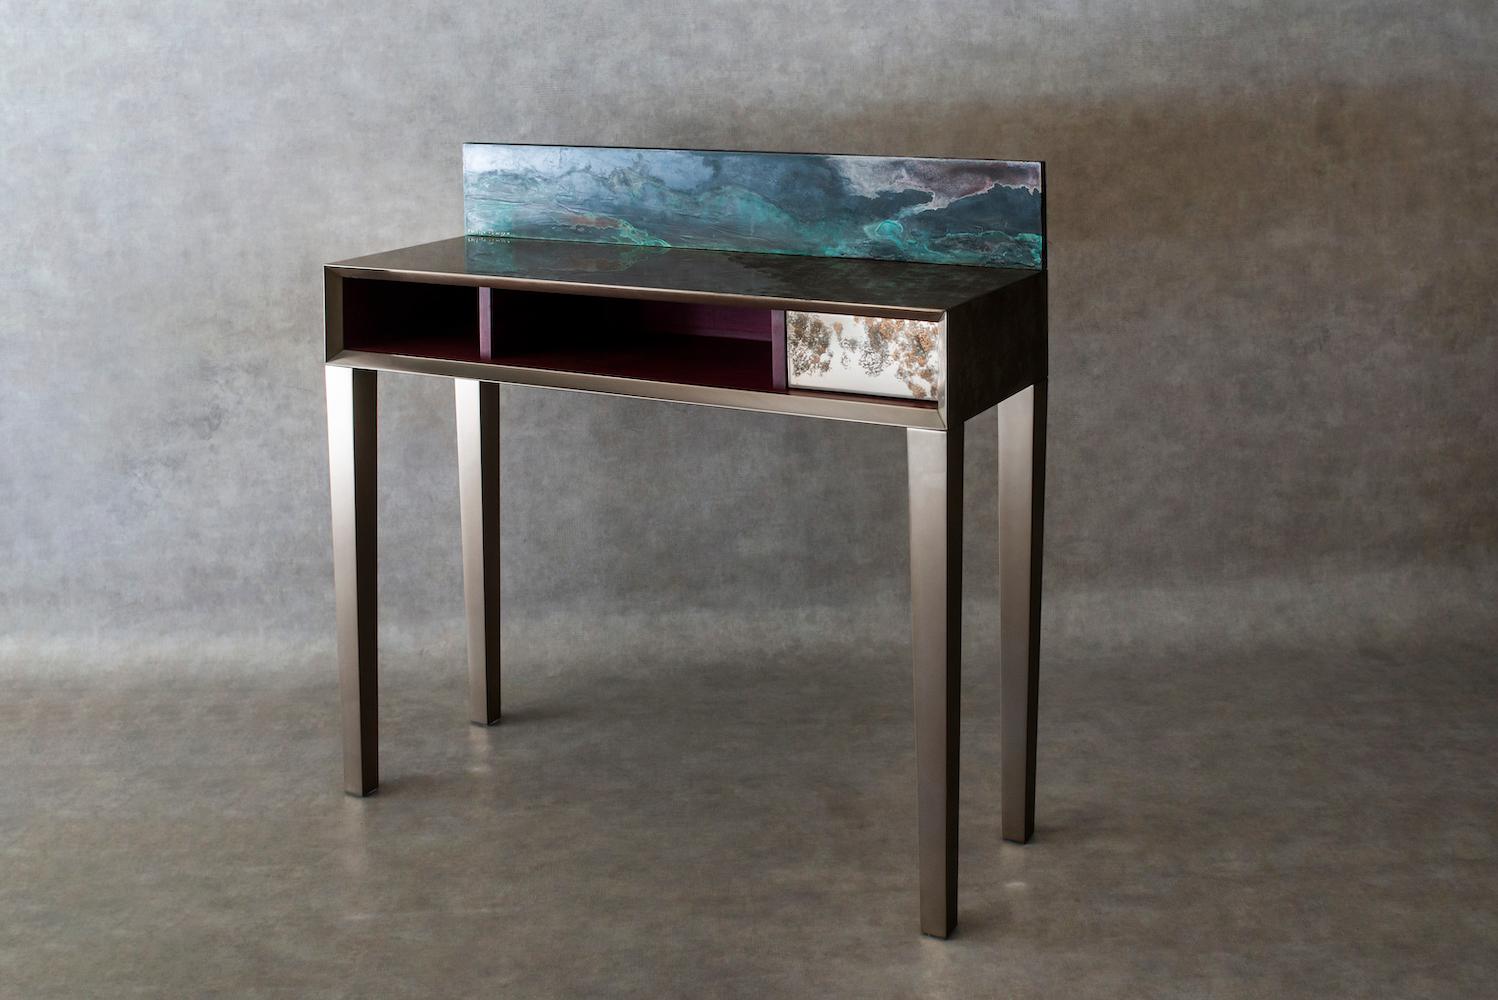 Dieser Schreibtisch ist vollständig mit Titan verkleidet, mit Ausnahme des Stauraums, dessen zwei kleine Fächer aus Amaranth gefertigt sind, einem edlen Hartholz, das für seinen violetten Farbton bekannt ist. Eine abnehmbare Platte erleichtert den